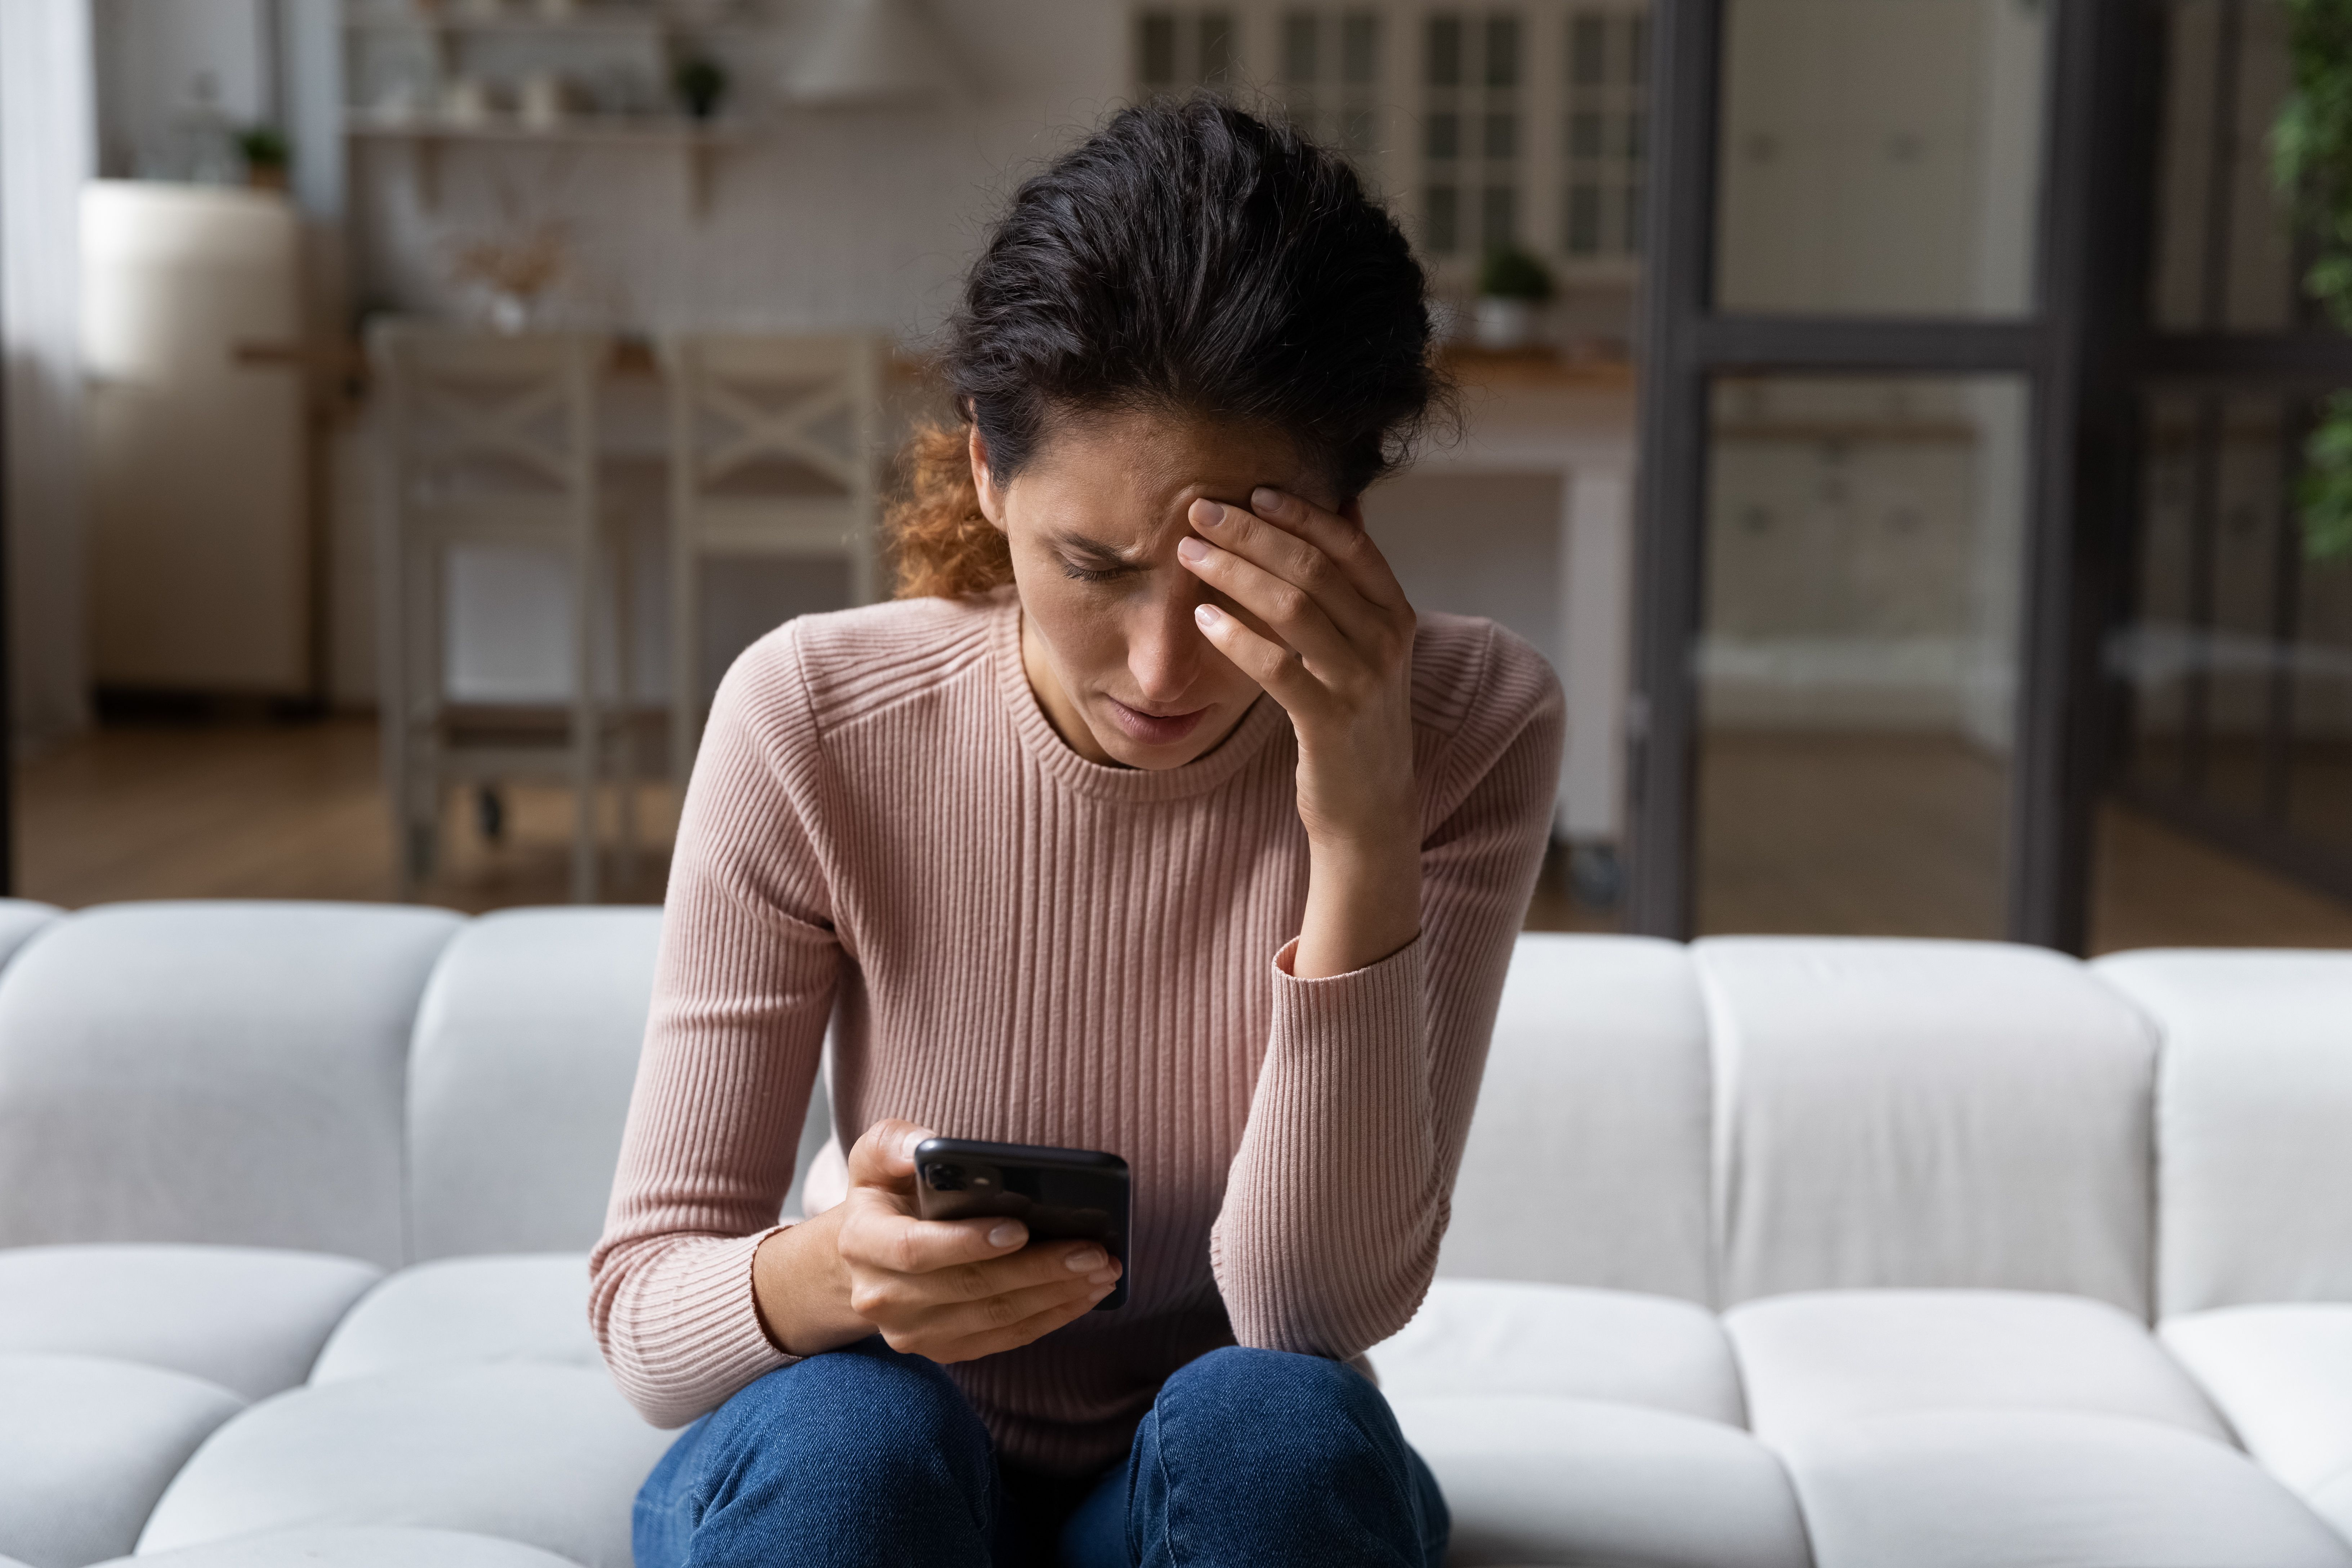 El abuso del móvil podría generar una personalidad impulsiva y agresiva